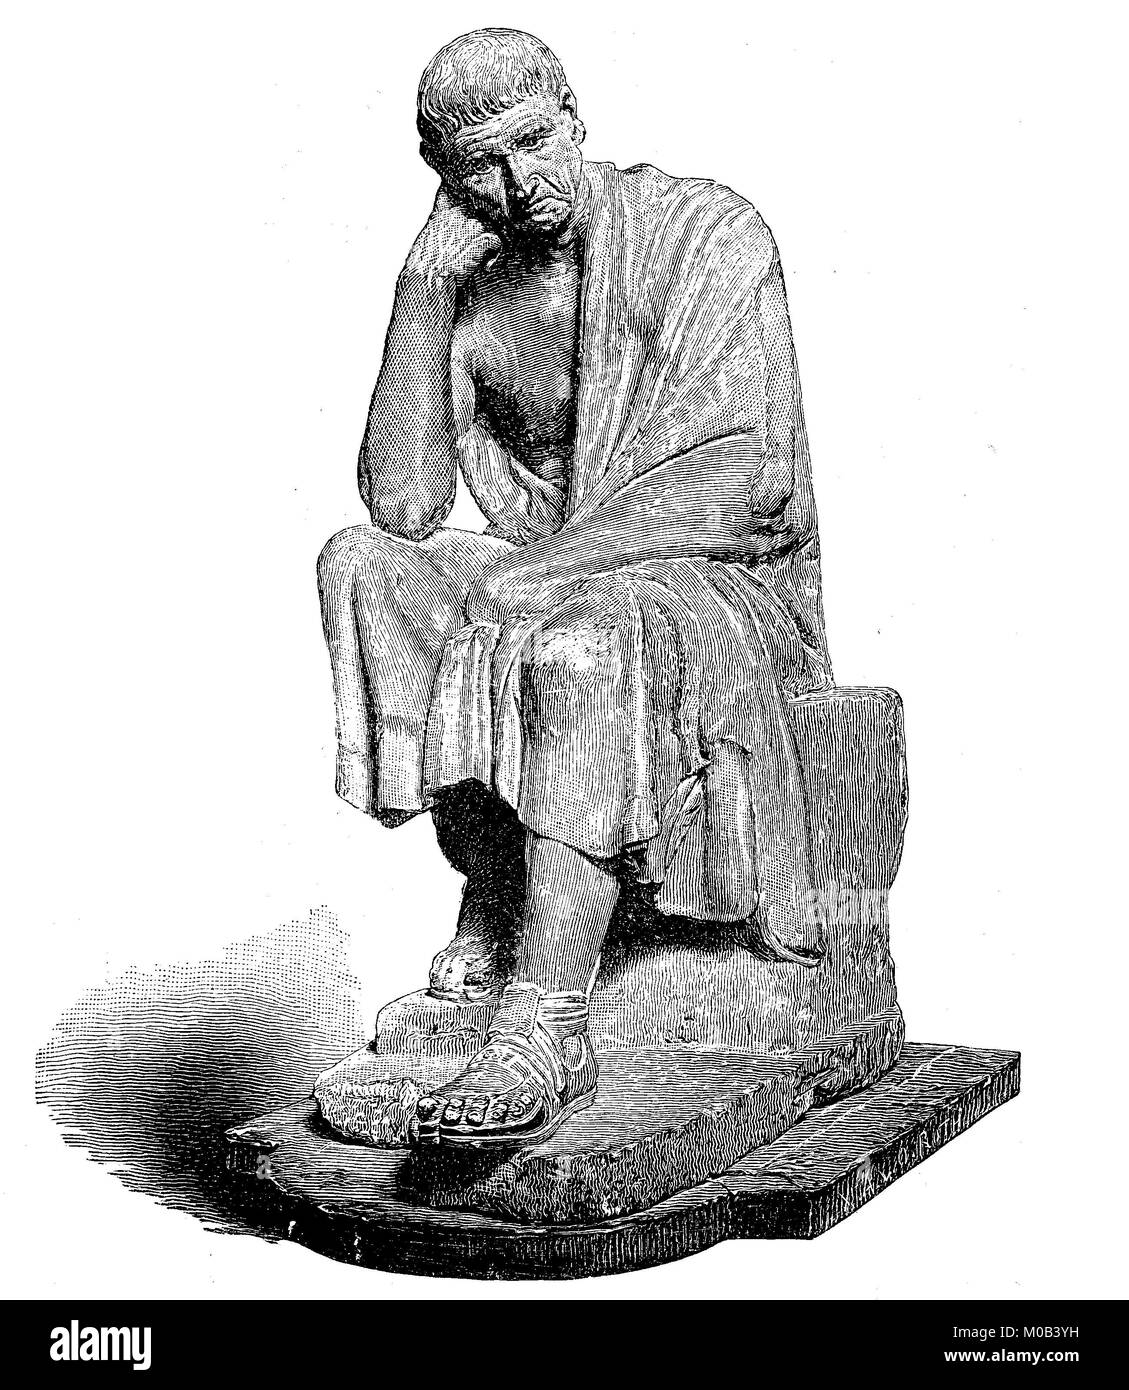 Aristote, Aristote, 384 av. J. Chr. - 322 av. J.-C.-B., est l'un des plus célèbres et influents de philosophes et naturalistes de l'histoire, la statue du palais Spada à Rome, Italie, amélioration numérique reproduction d'une estampe originale de 1880 Banque D'Images